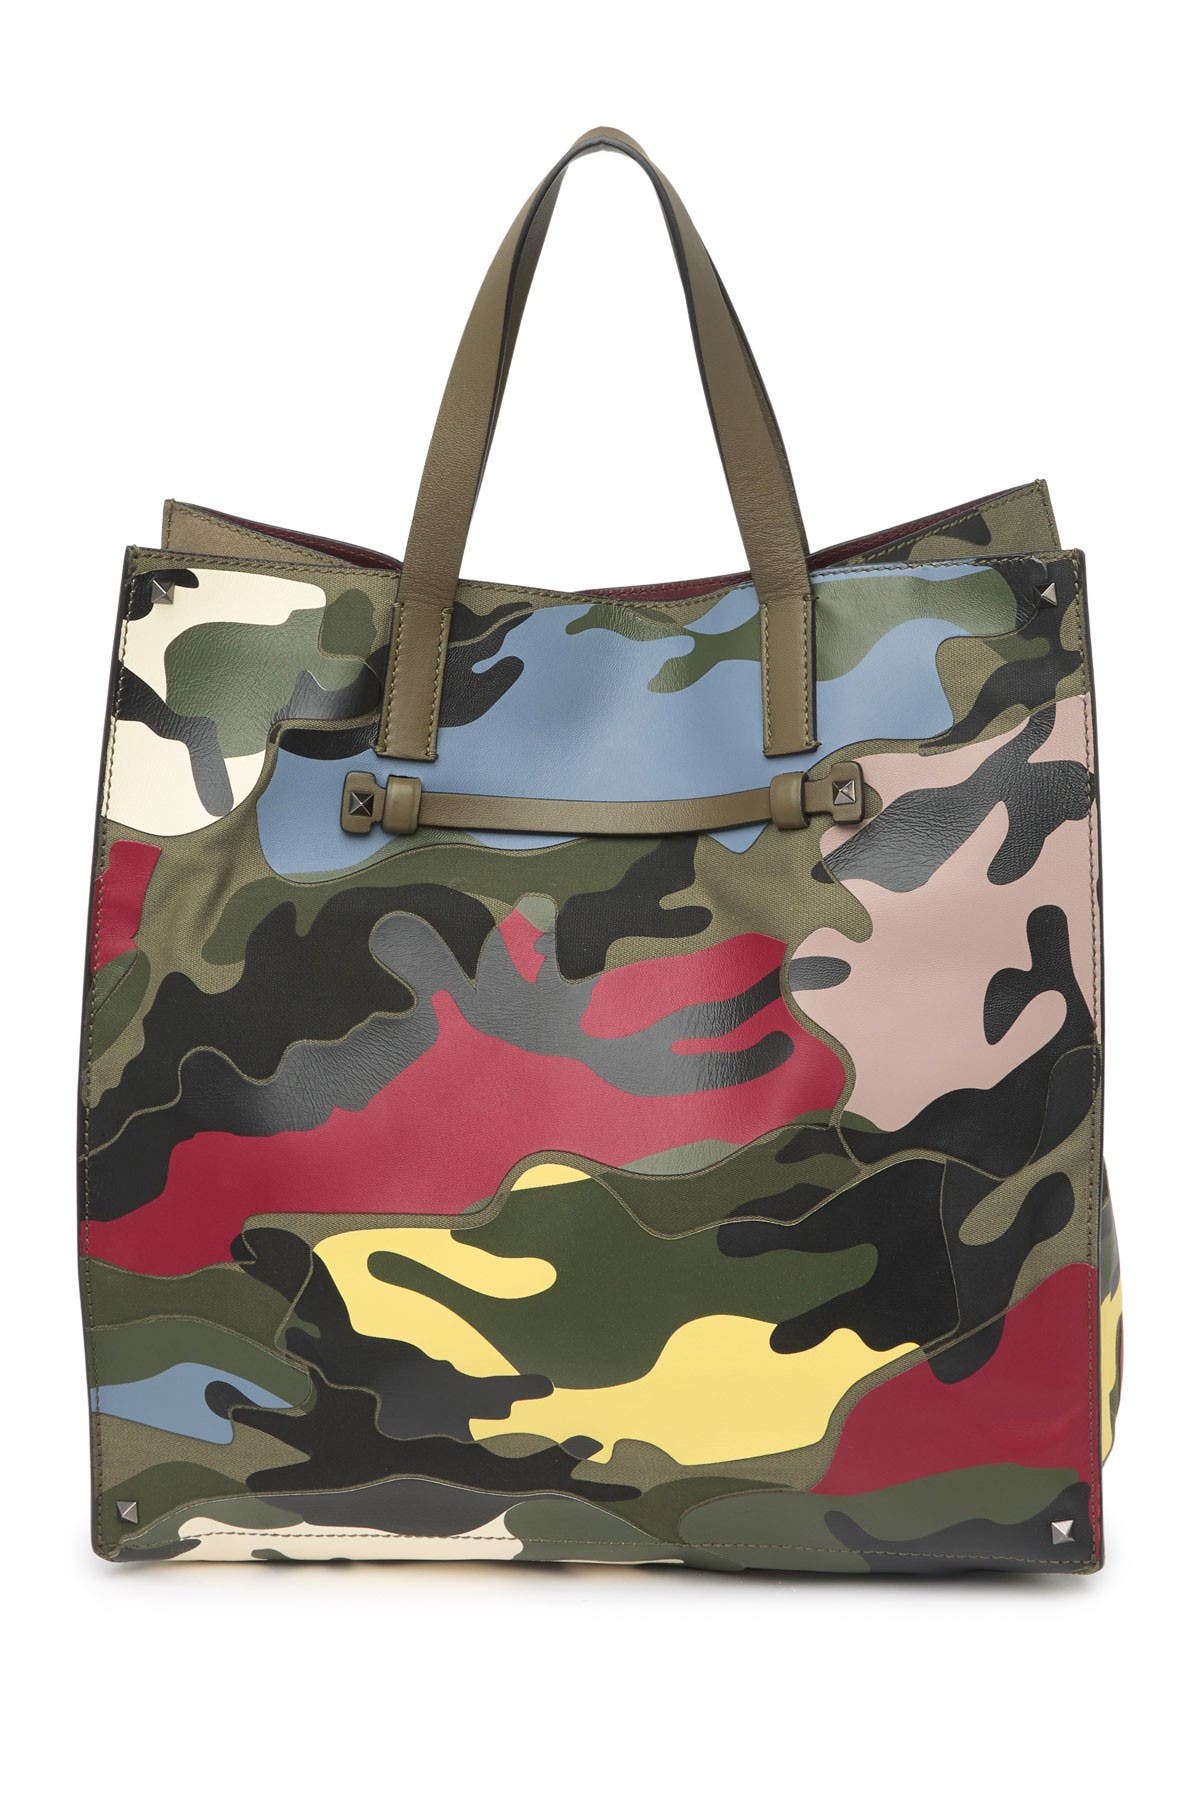 Valentino Garavani Camo Print Leather Tote Bag In Army Green/slik Colo